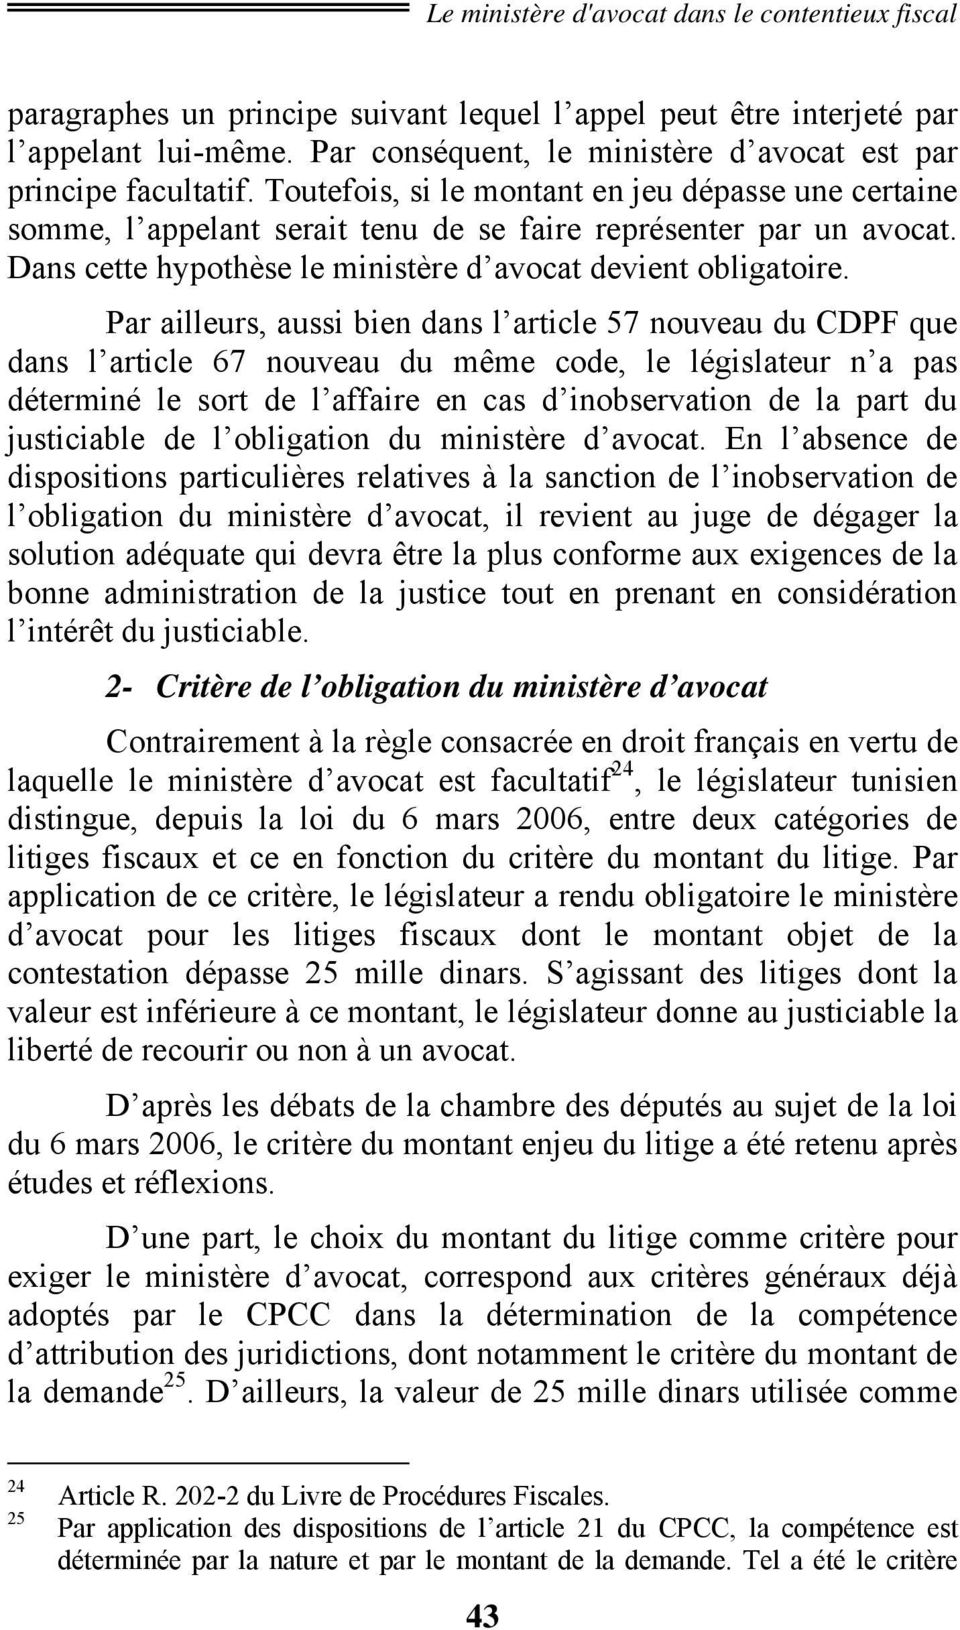 Par ailleurs, aussi bien dans l article 57 nouveau du CDPF que dans l article 67 nouveau du même code, le législateur n a pas déterminé le sort de l affaire en cas d inobservation de la part du